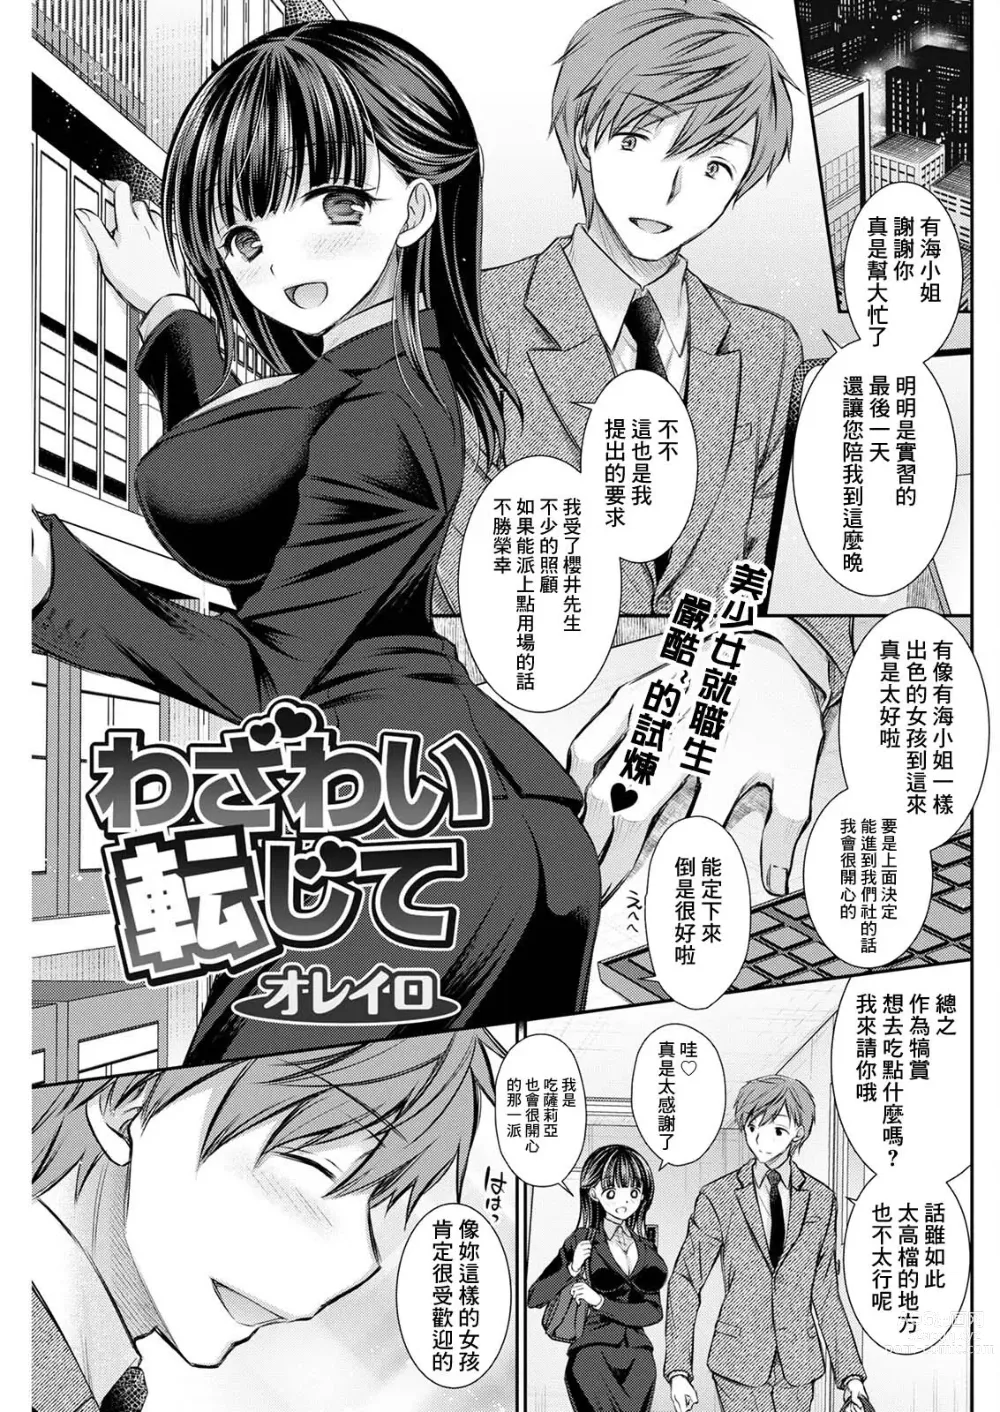 Page 1 of manga Wazawai Tenjite